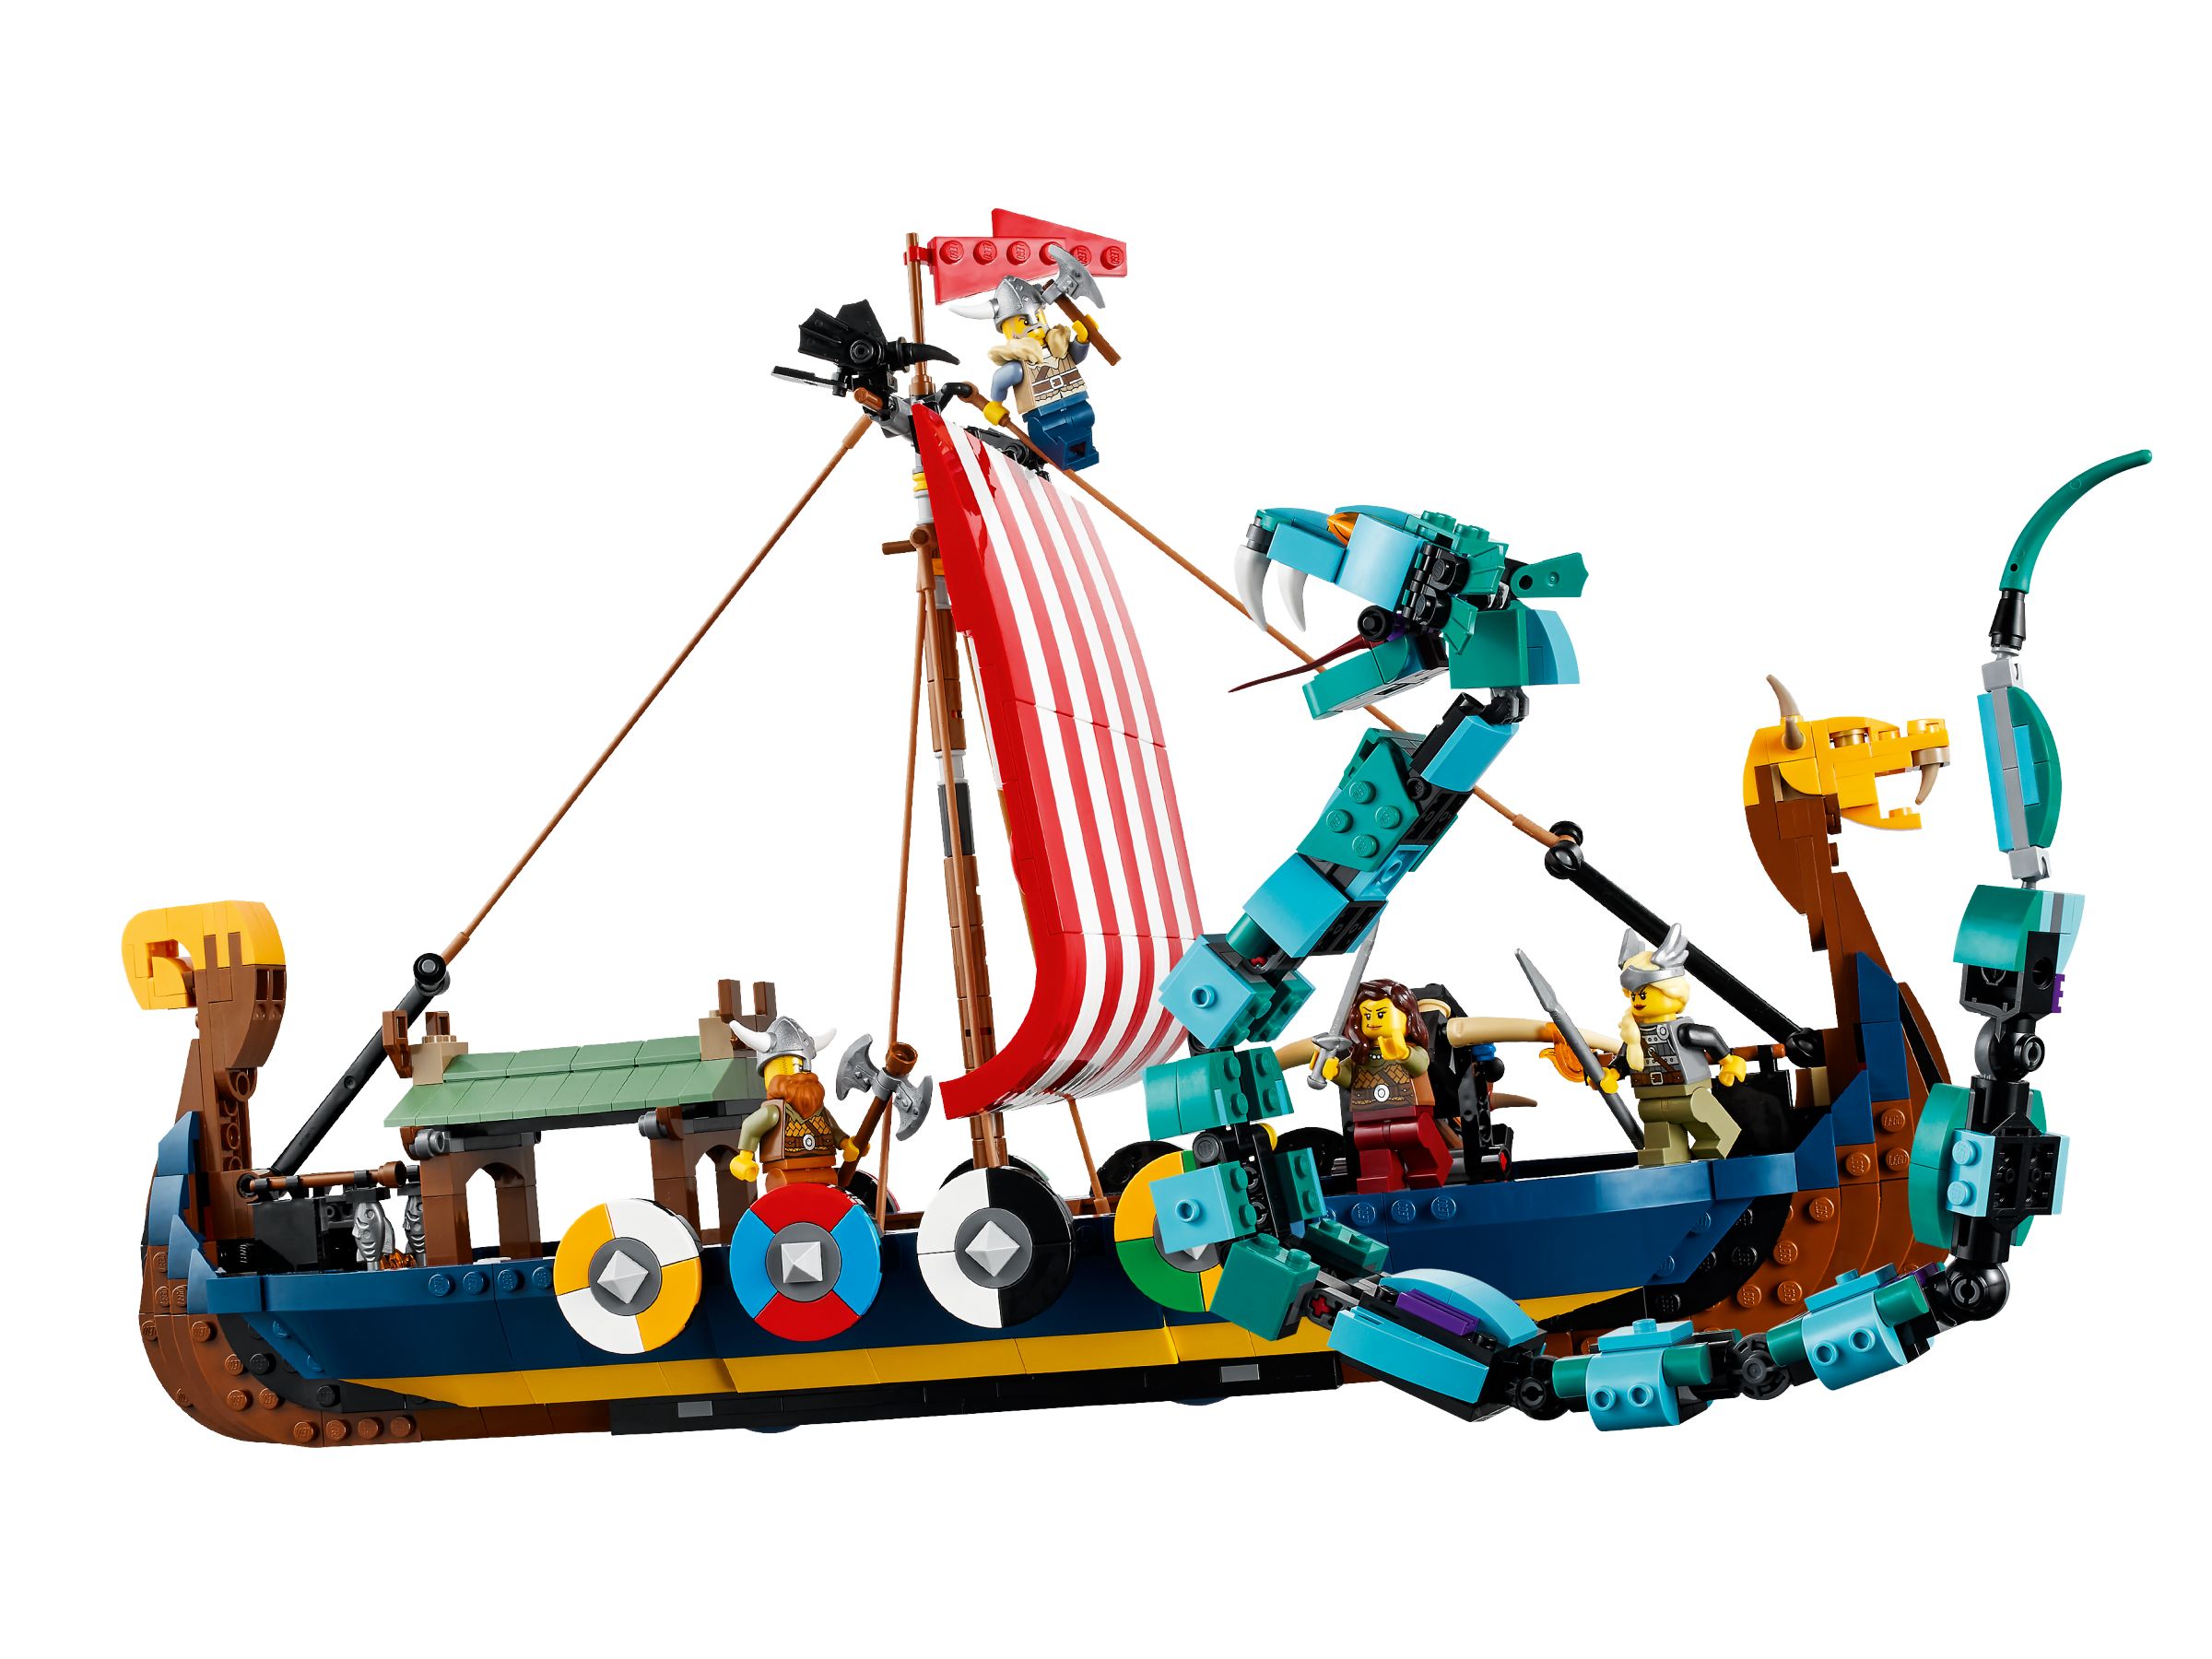 LEGO® Creator 31132 Wikingerschiff mit Midgardschlange